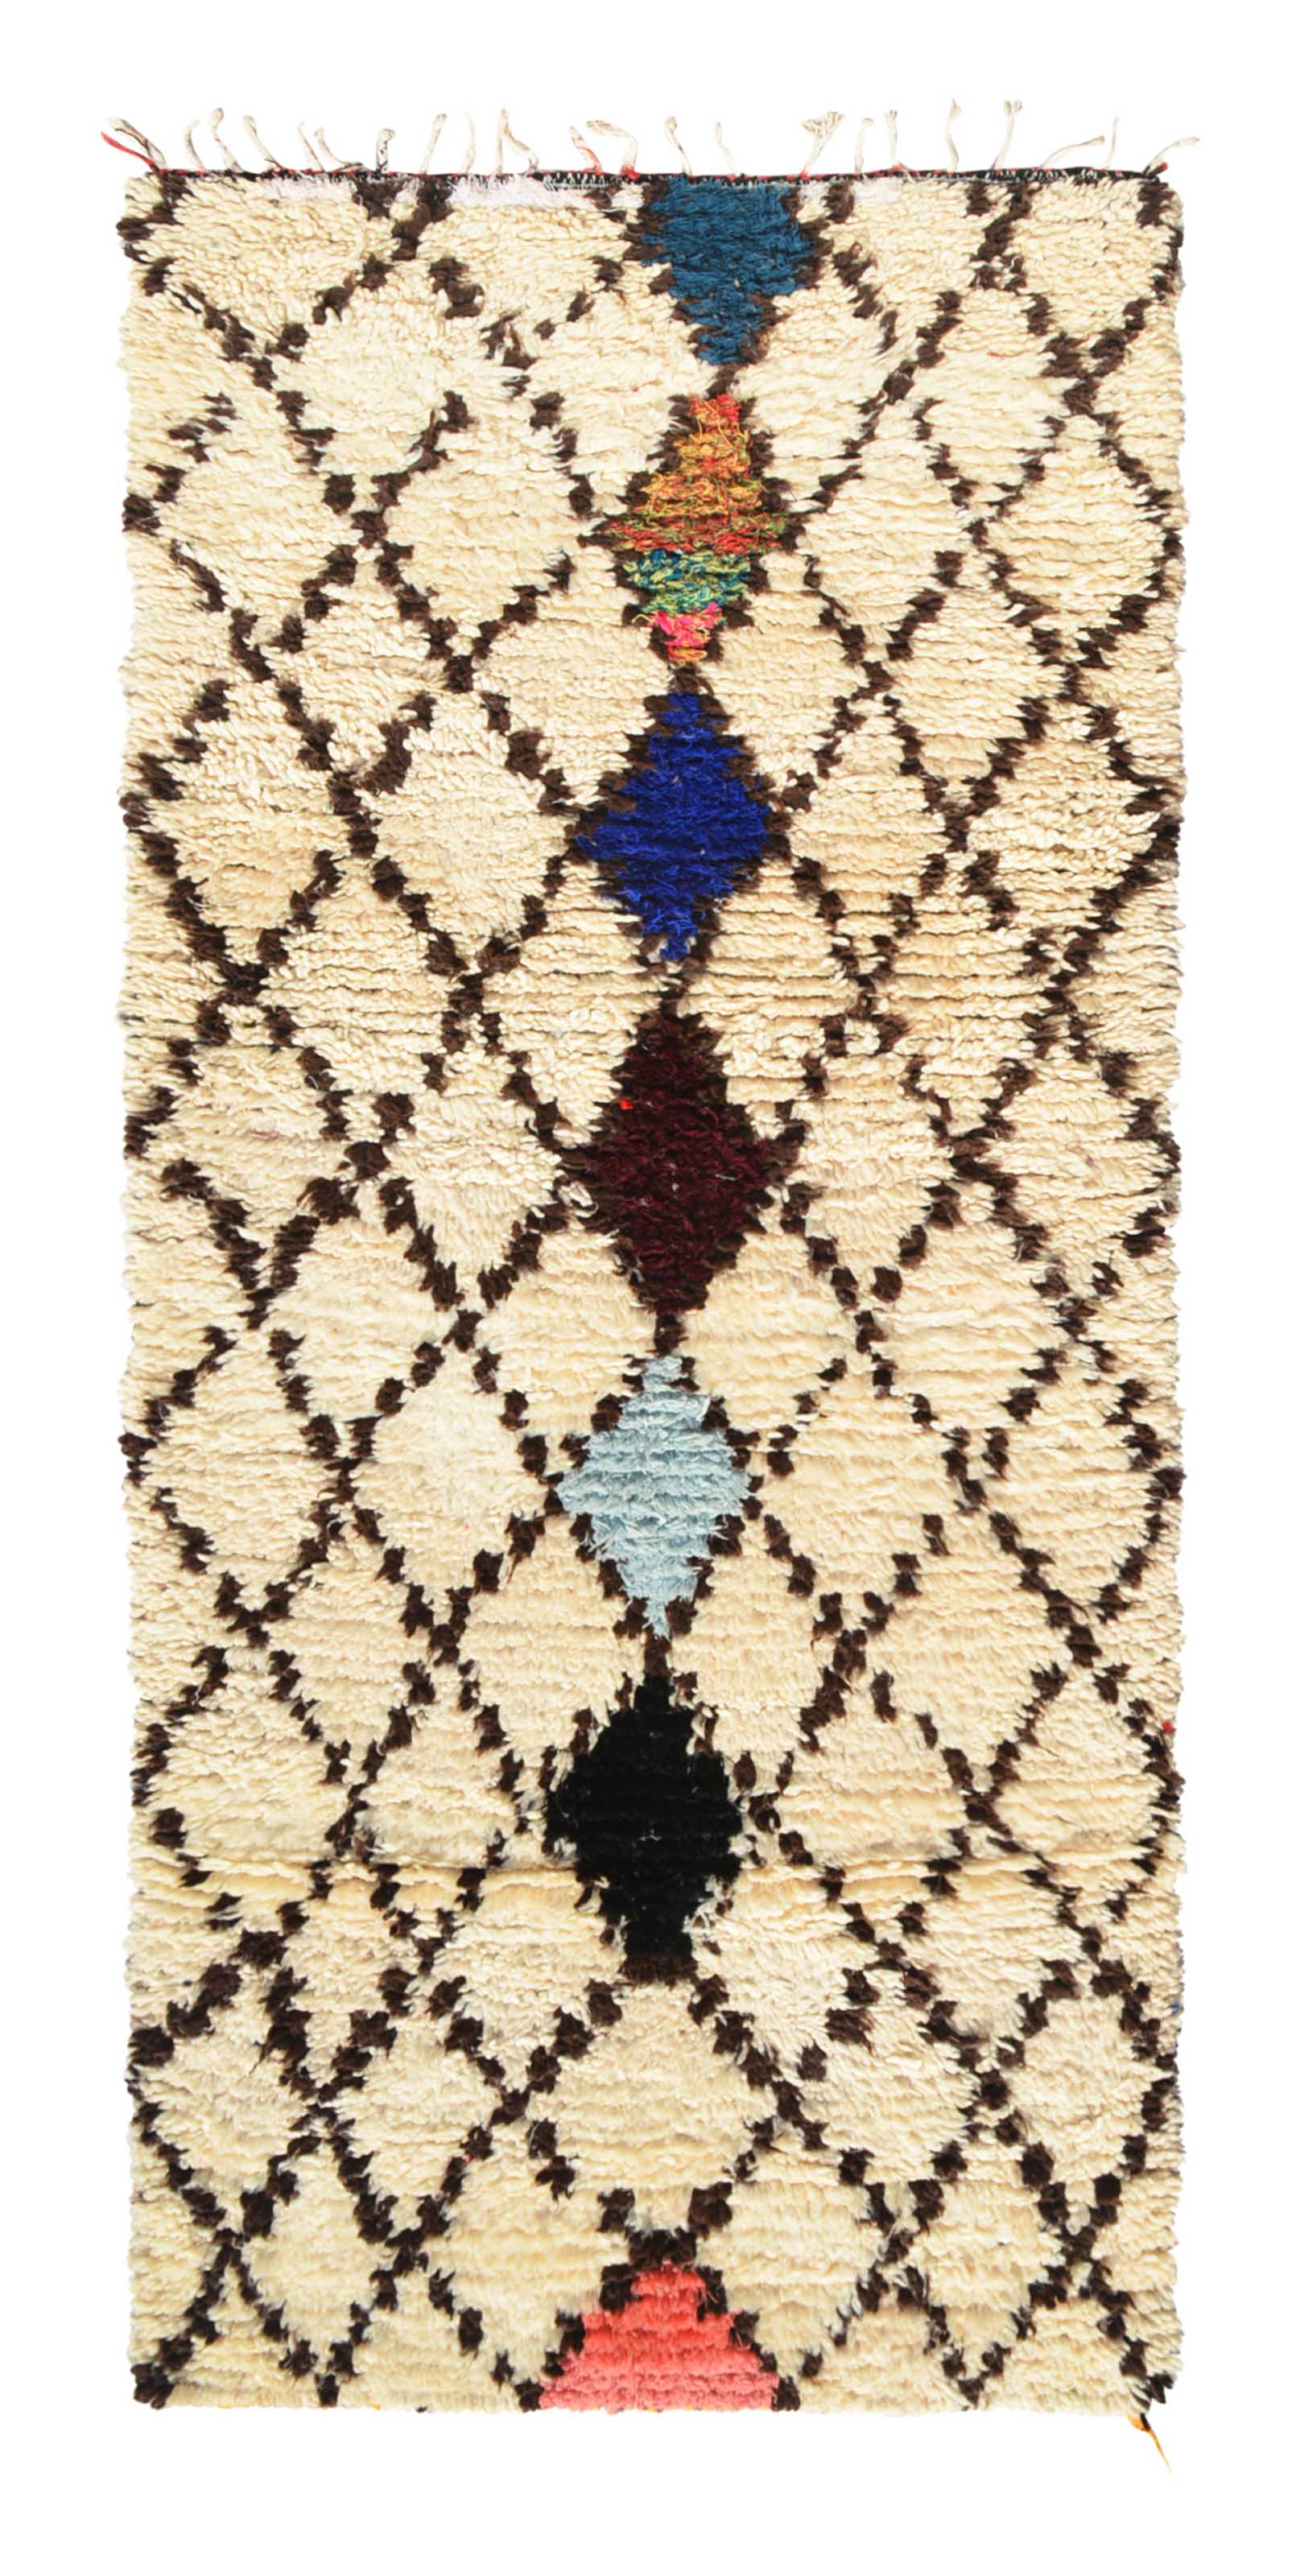 Vintage Moroccan Rug Vintage Moroccan Rug - Baby Blue Rugs For Nursery - Illuminate Collective illuminate collective 